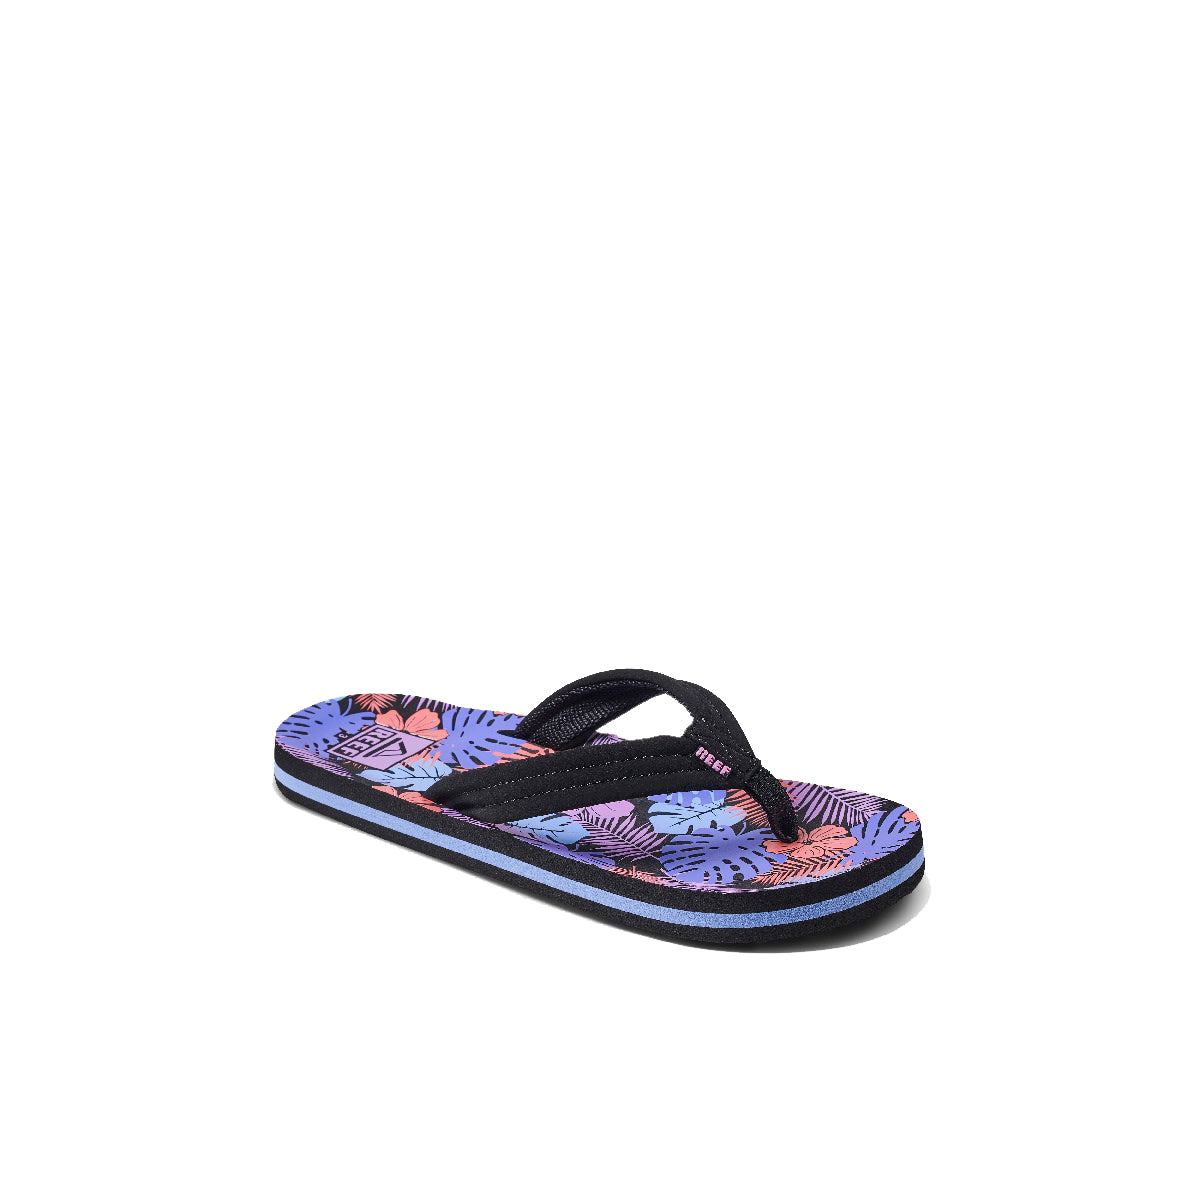 Reef Ahi Girls Sandal Purple Fronds 1 Y